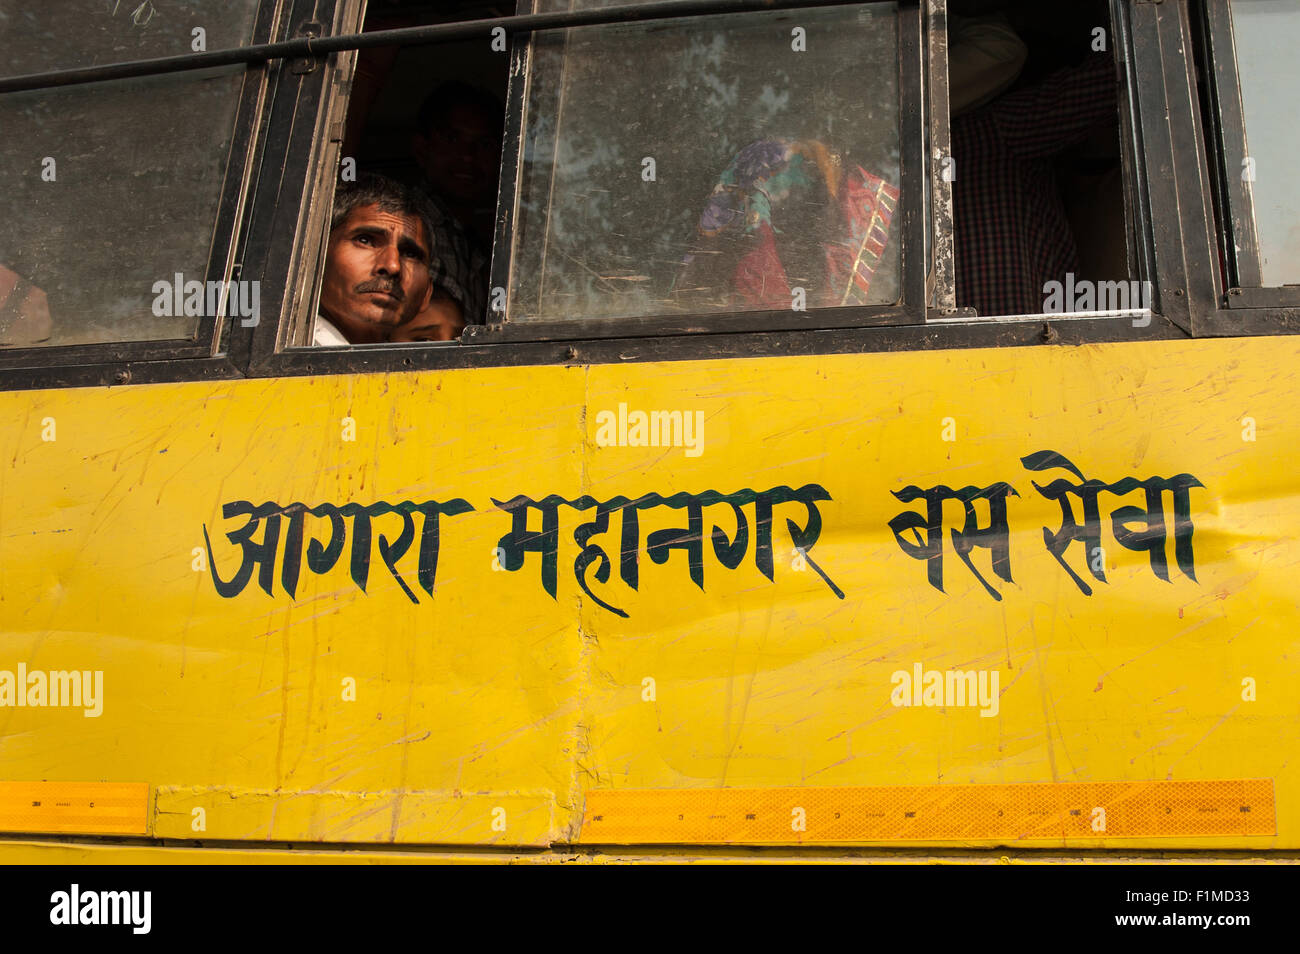 Agra, Utar Pradesh, Inde. Les personnes à la recherche d'un bus jaune Agra Agra 'avec service de bus métropolitains' écrit en hindi. Banque D'Images